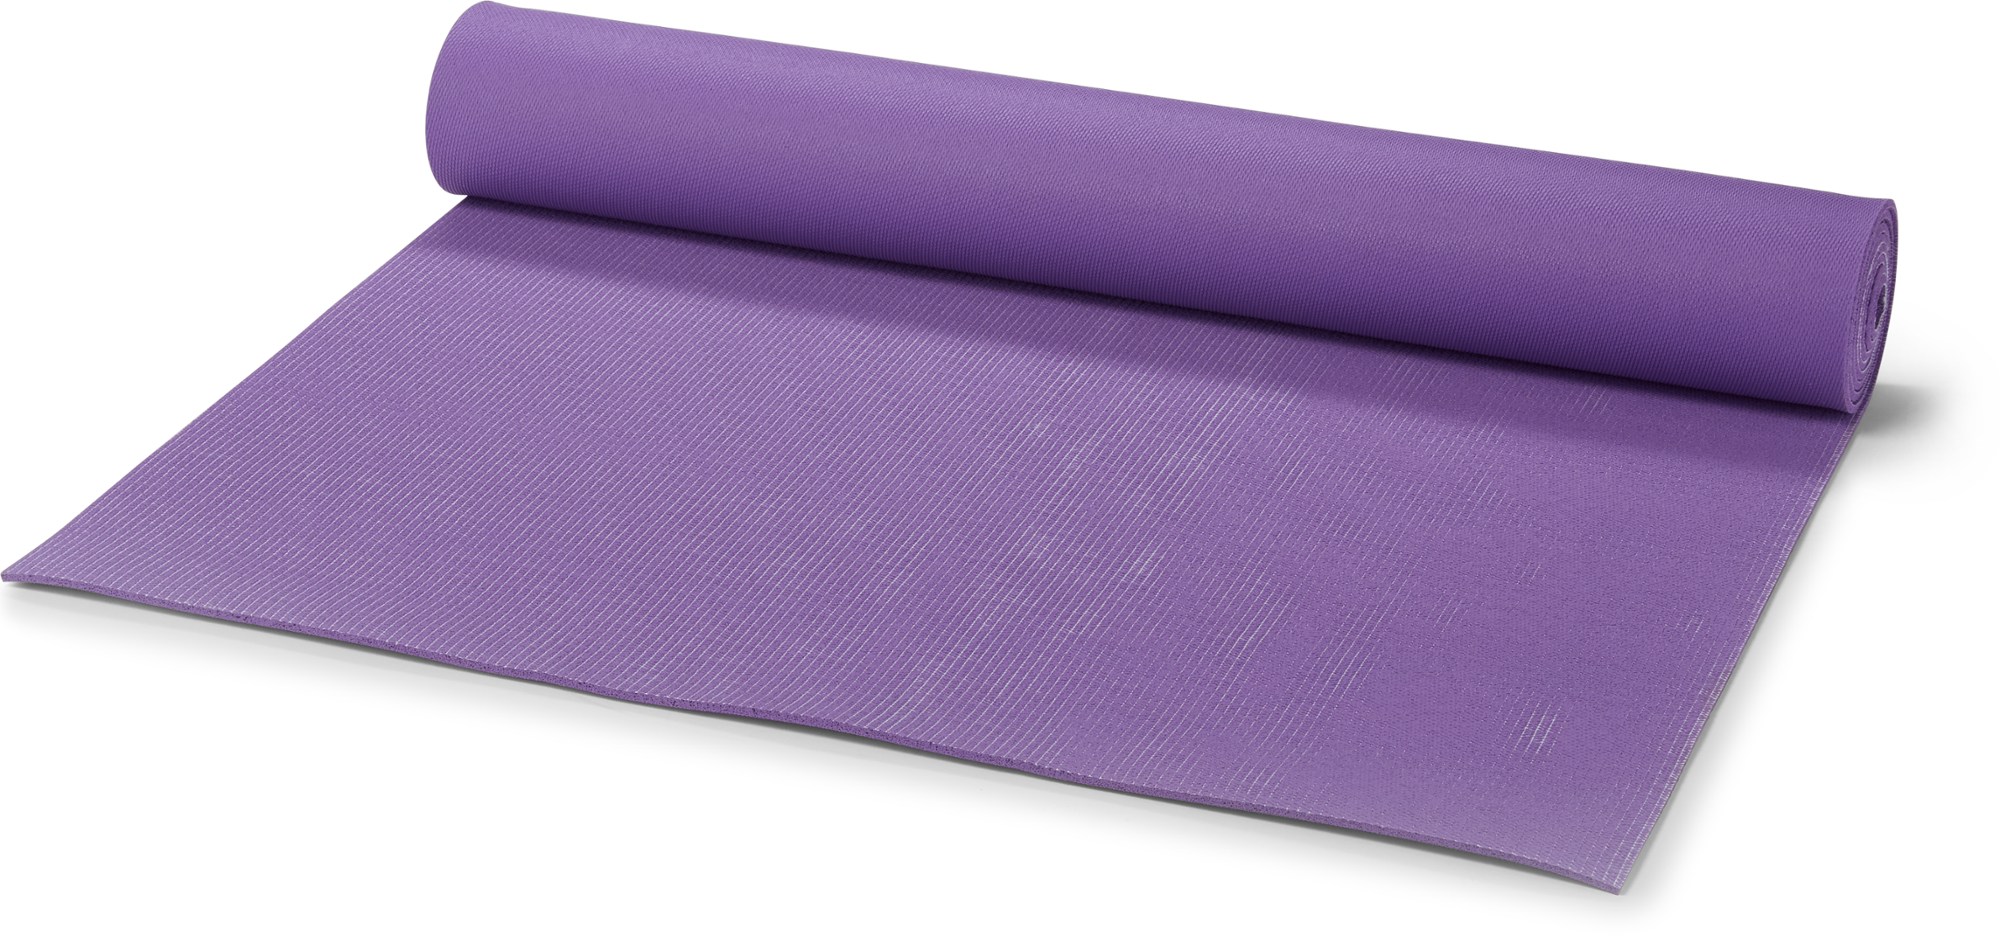 переработанный коврик для йоги сари jade мультиколор Коврик для йоги 1-го уровня Jade, фиолетовый